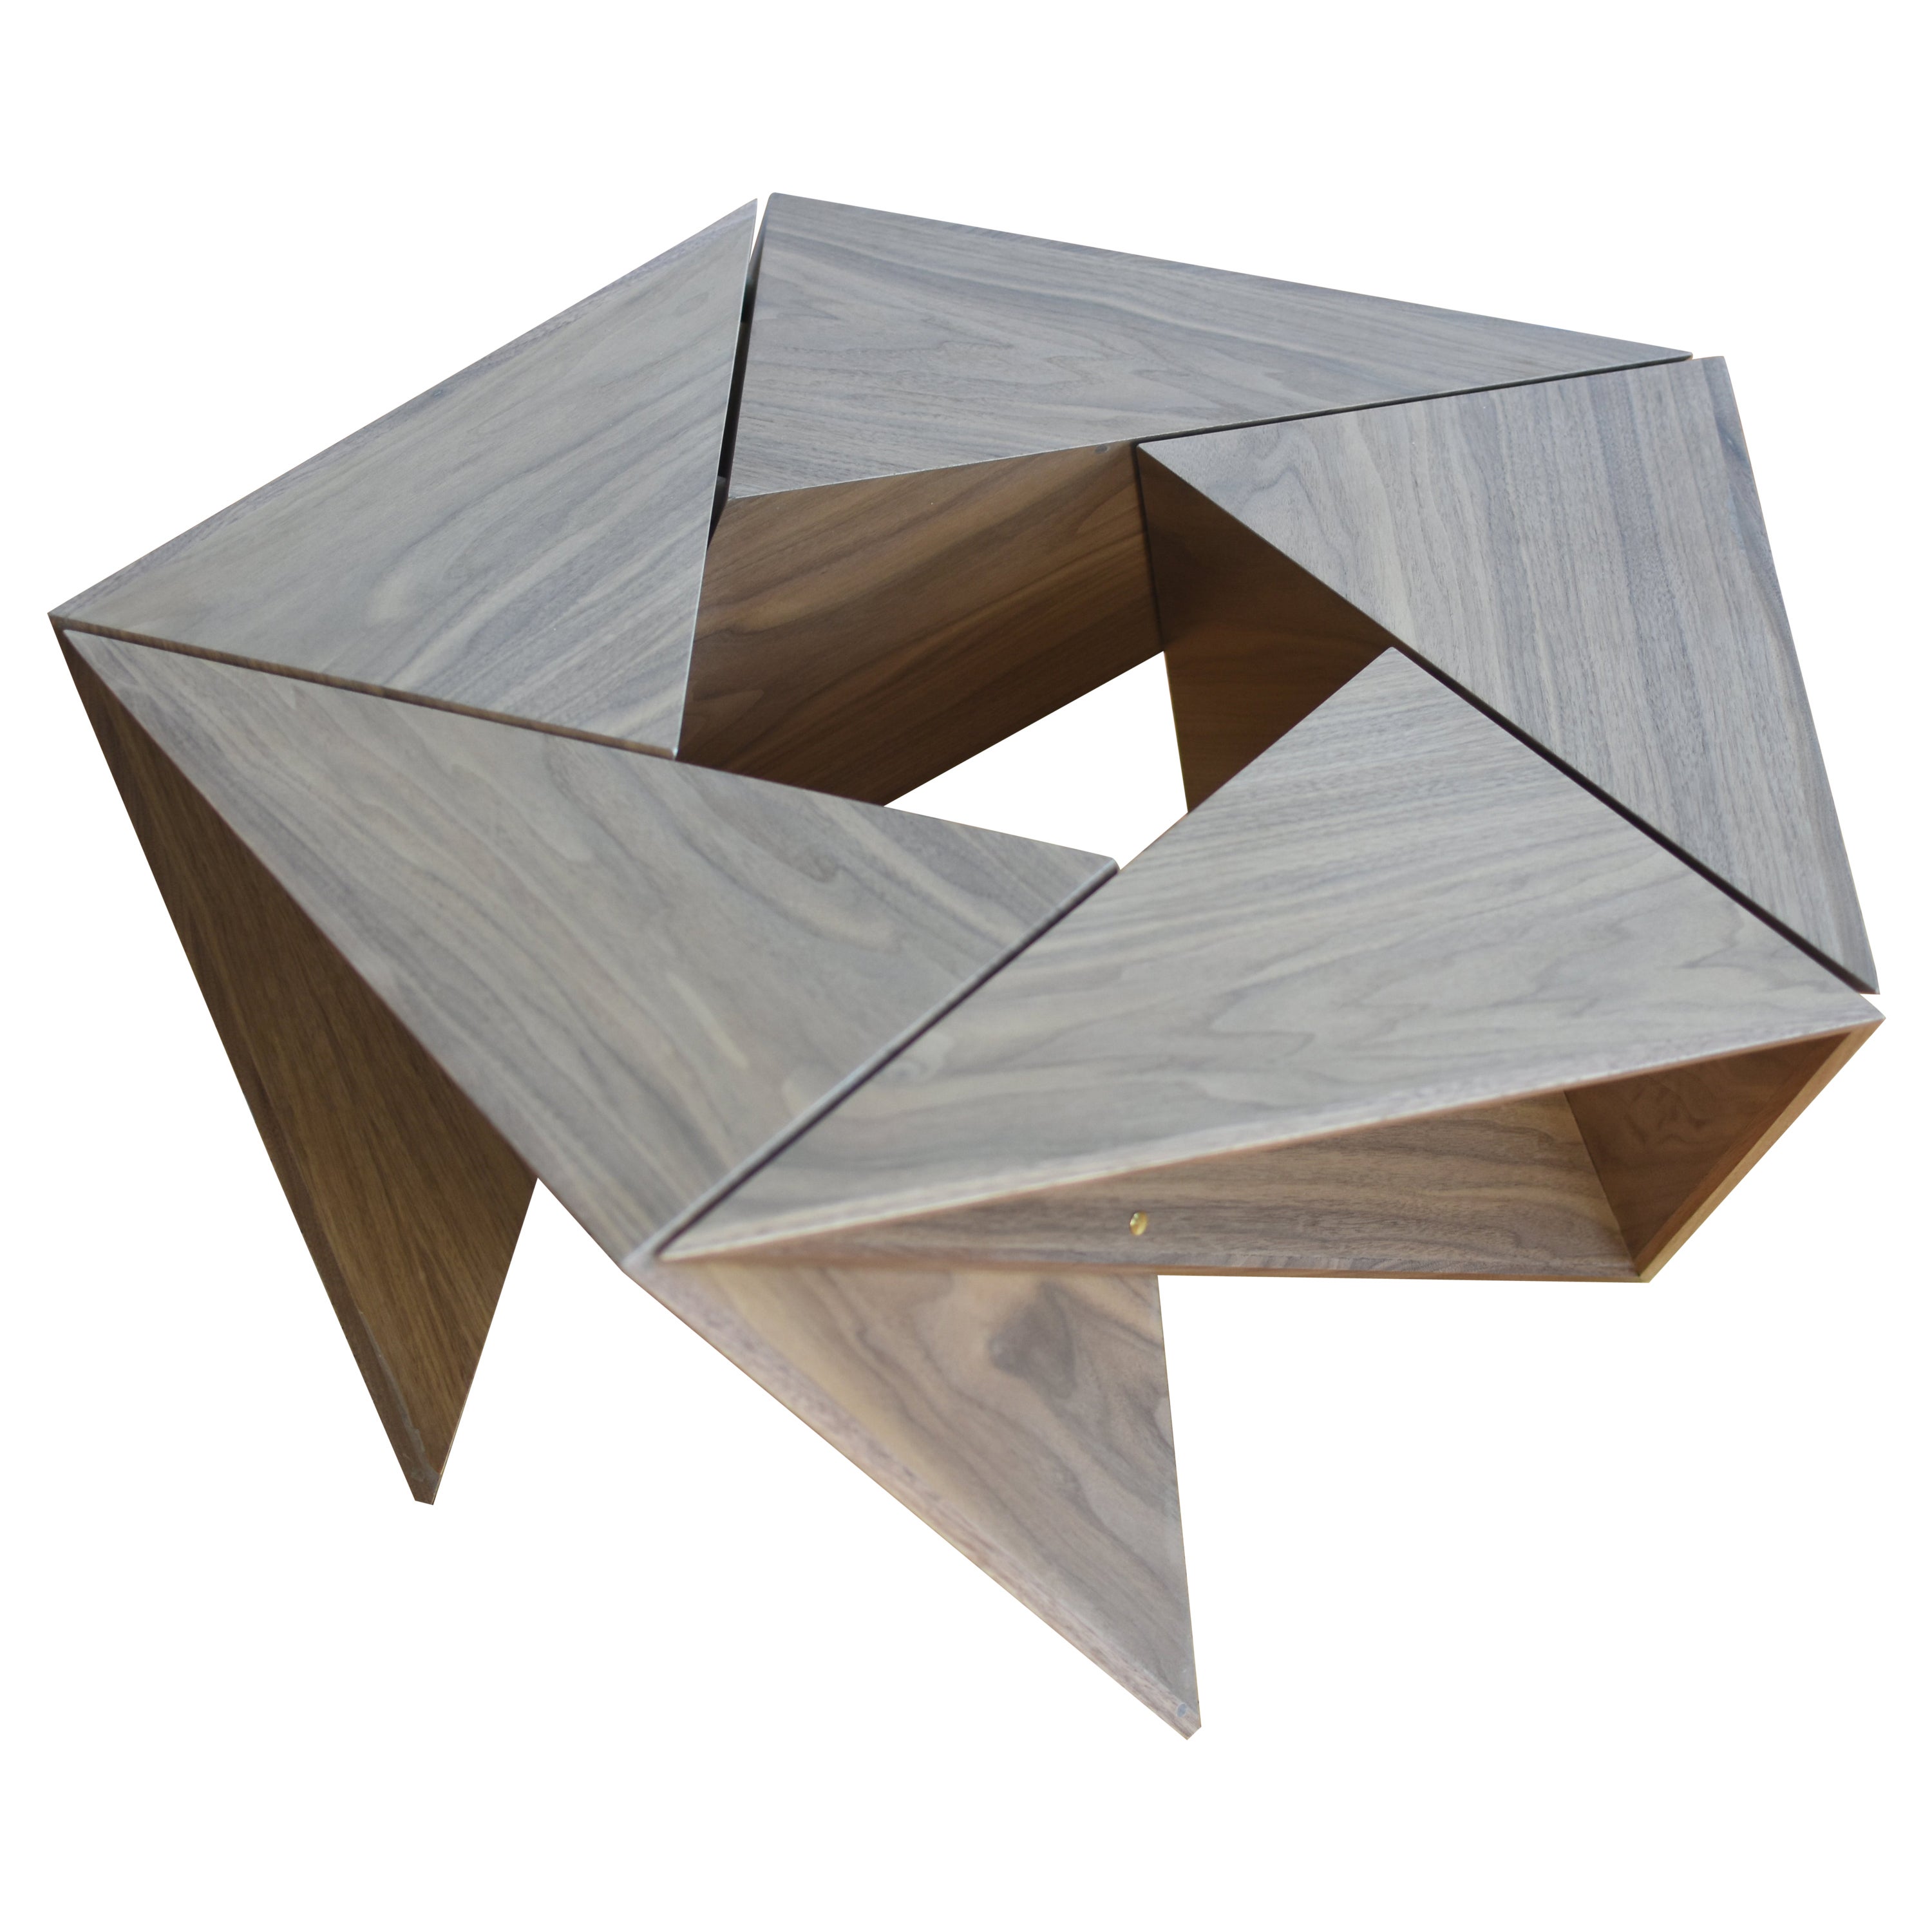 El Cangrejito, Pentagonal Modular Coffee Table Walnut Edition by Louis Lim For Sale